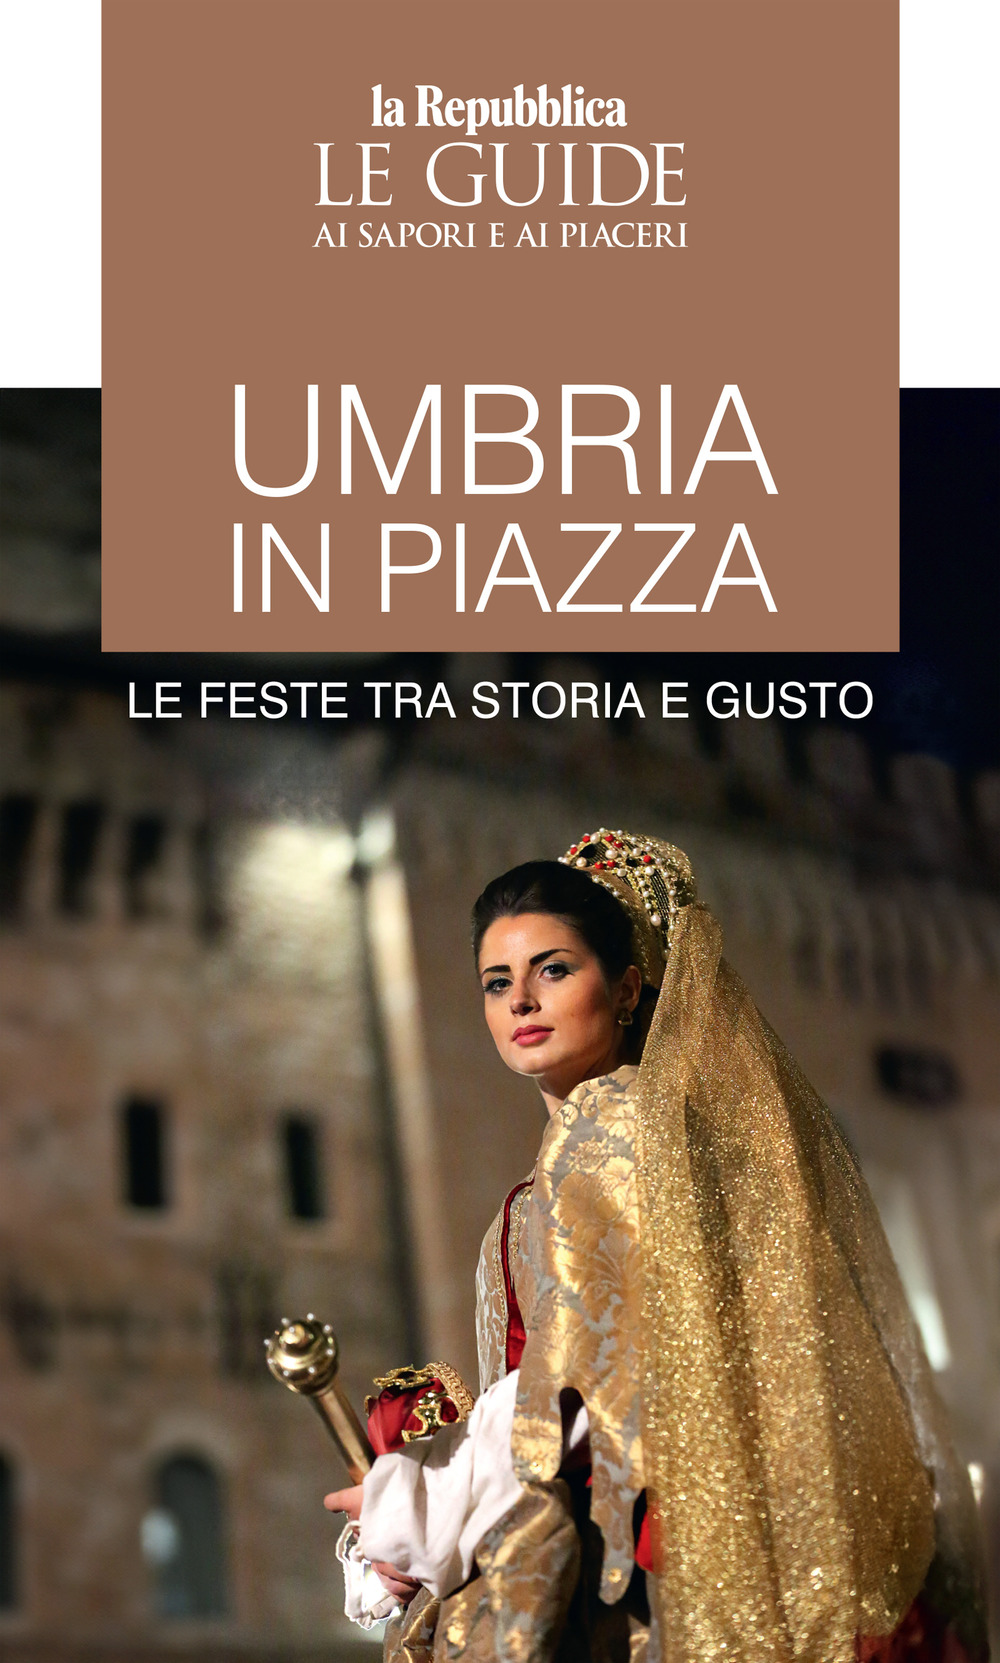 Umbria in piazza. Le feste tra storia e gusto. Le guide ai sapori e ai piaceri